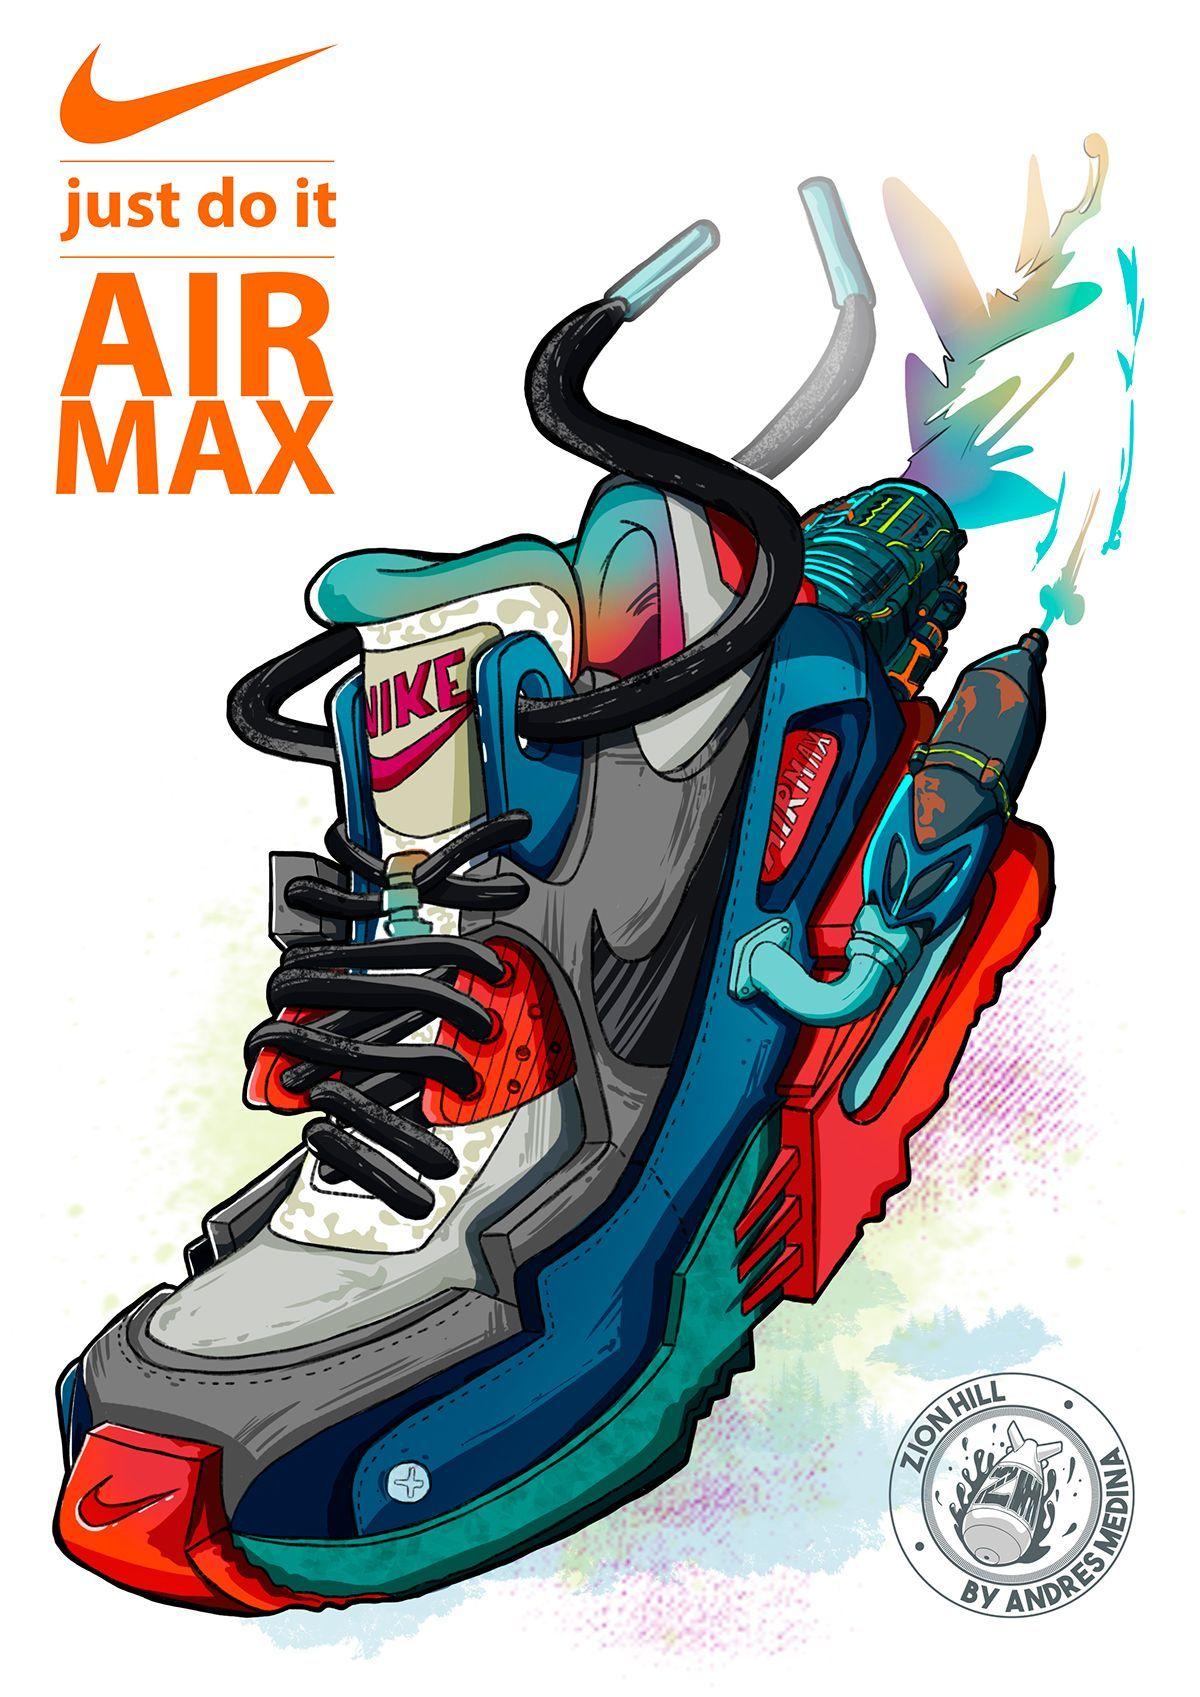 NIKE AIRMAX. Sneaker art, Sneakers wallpaper, Nike